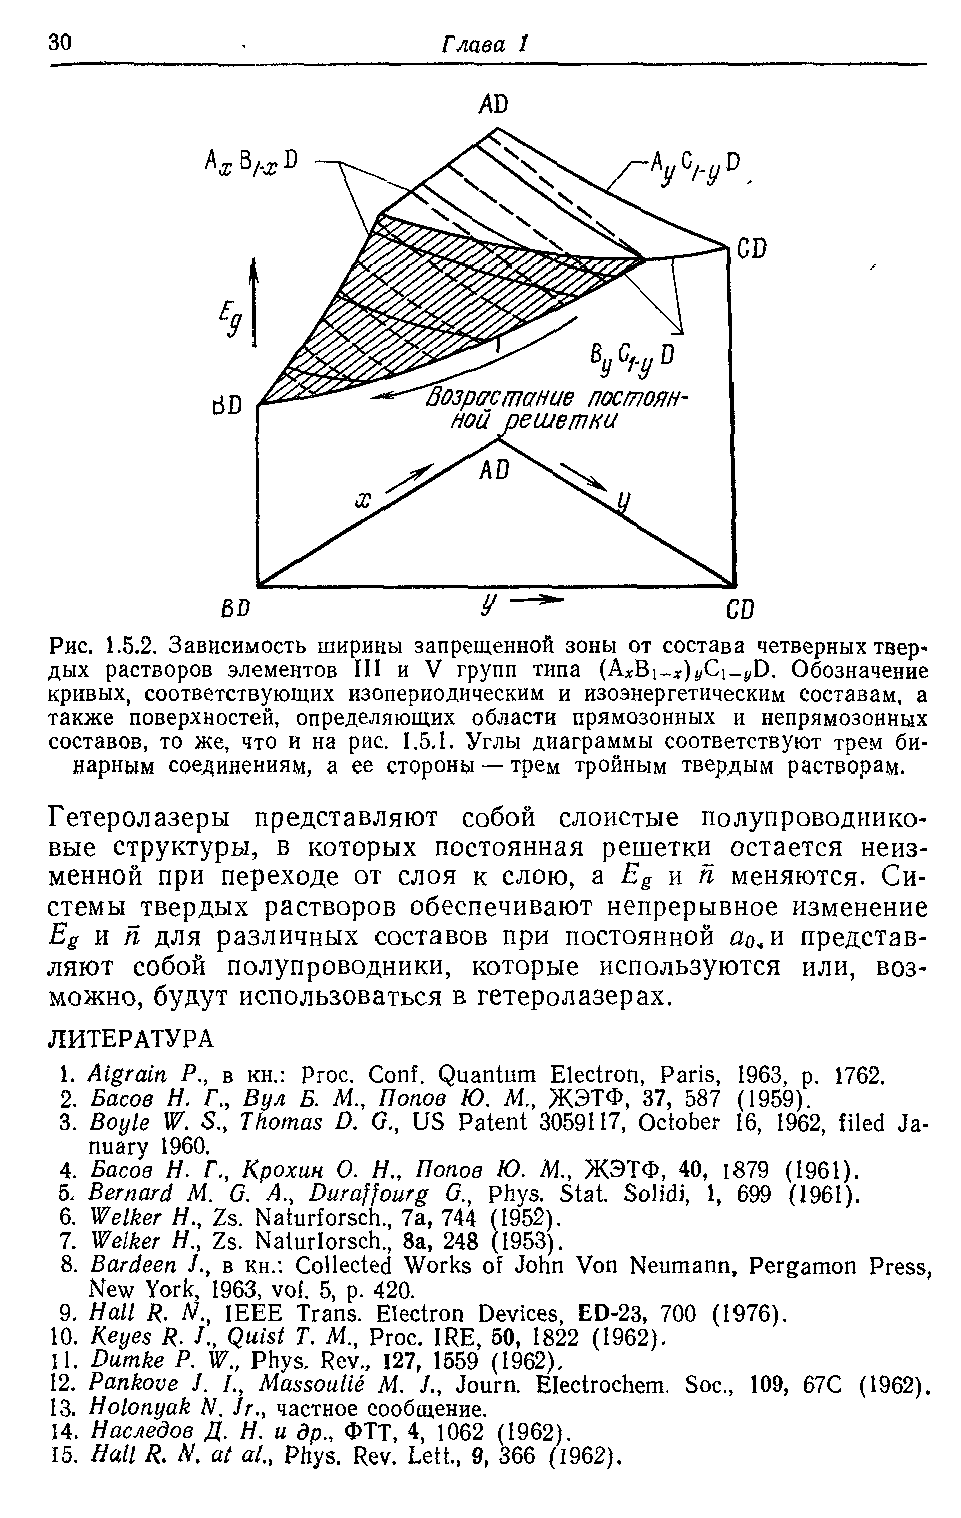 Рис. 1.5.2. Зависимость ширины запрещенной зоны от состава четверных твердых растворов элементов III и V групп типа (A Bi ,)y i j,D. Обозначение кривых, соответствующих изопериодическим и изоэнергетическим составам, а также поверхностей, определяющих области прямозонных и непрямозонных составов, то же, что и на рис. 1.5.1. Углы диаграммы соответствуют трем <a href="/info/748694">бинарным соединениям</a>, а ее стороны —трем тройным твердым растворам.
